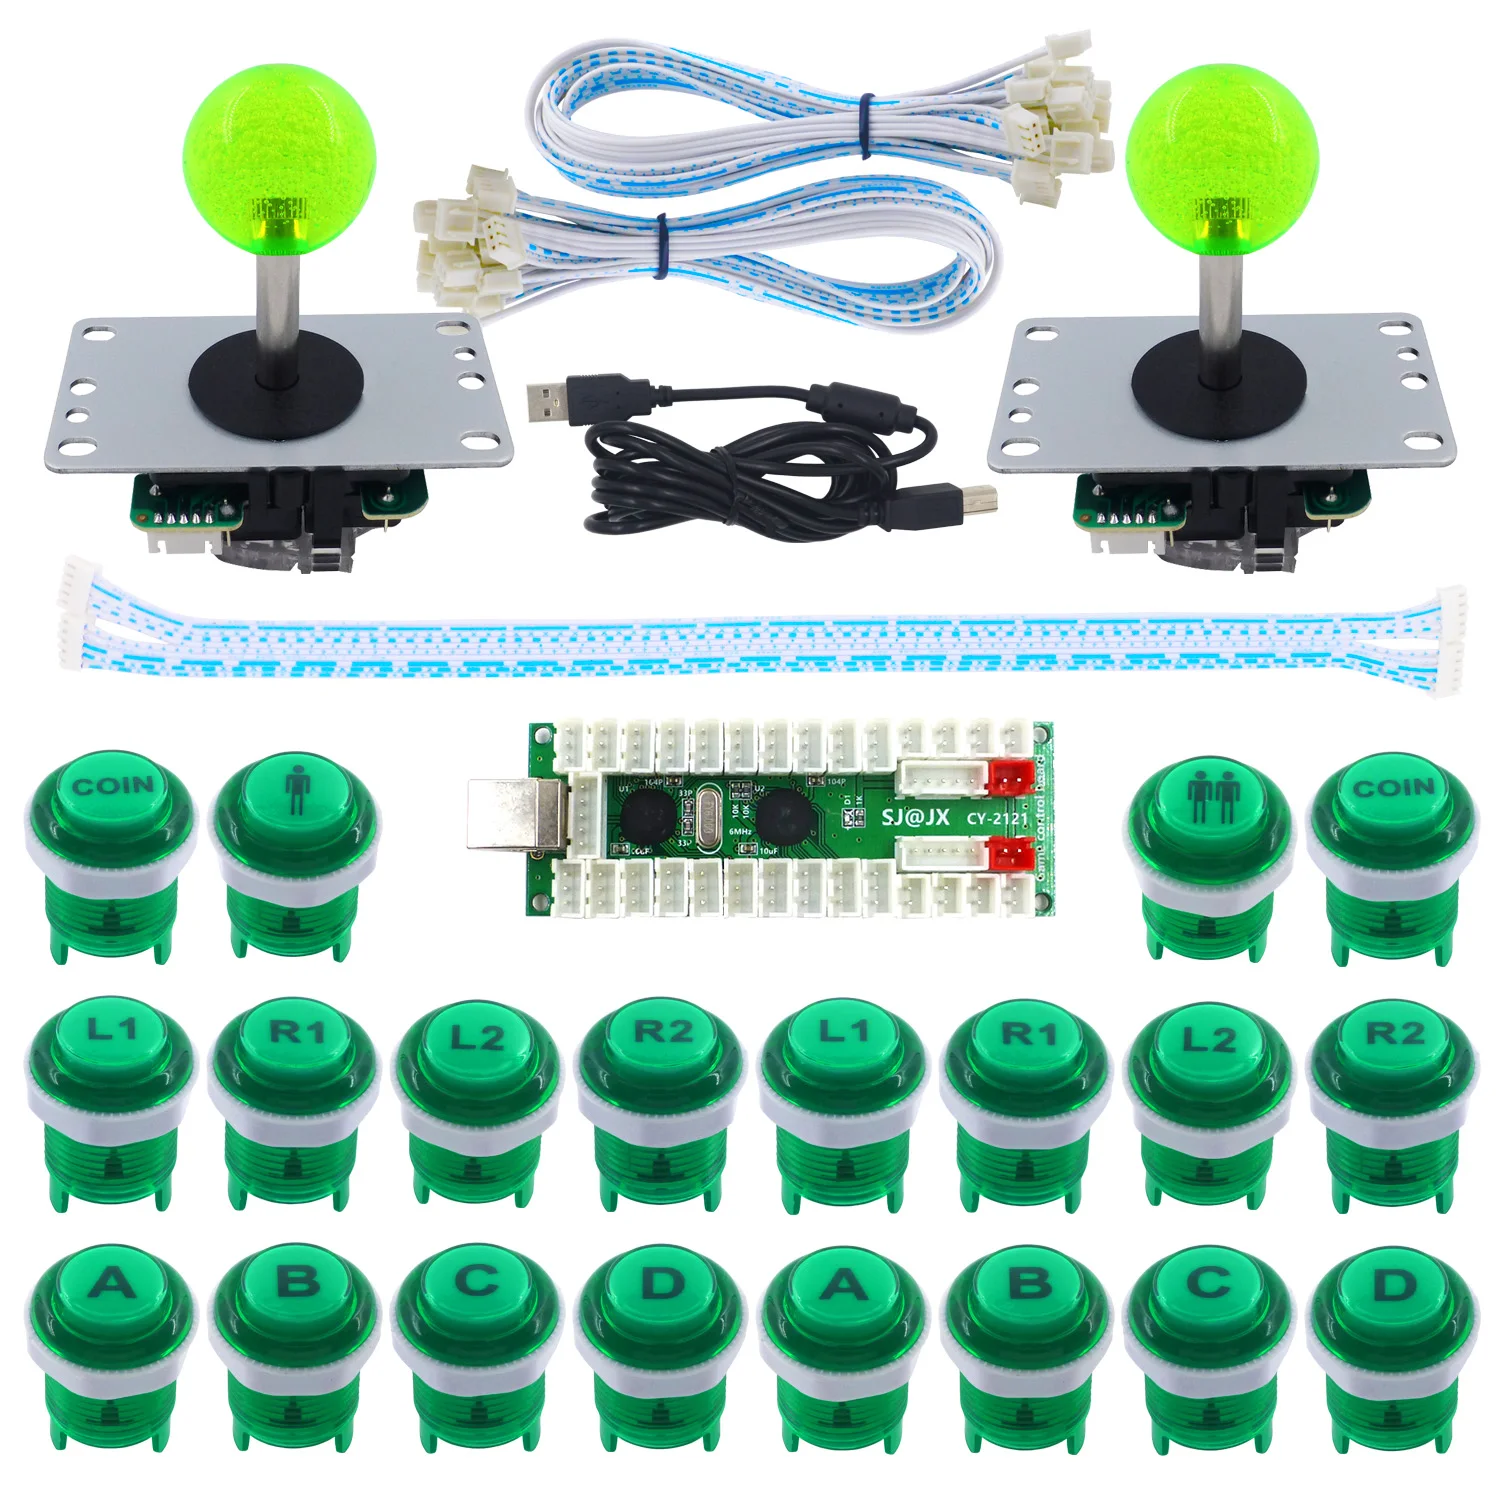 SJ@ JX 2 игрока светодиодный набор для аркадных игр DIY светодиодный контроллер с кнопкой Retropie боевой джойстик Raspberry Pi Нулевая задержка USB энкодер